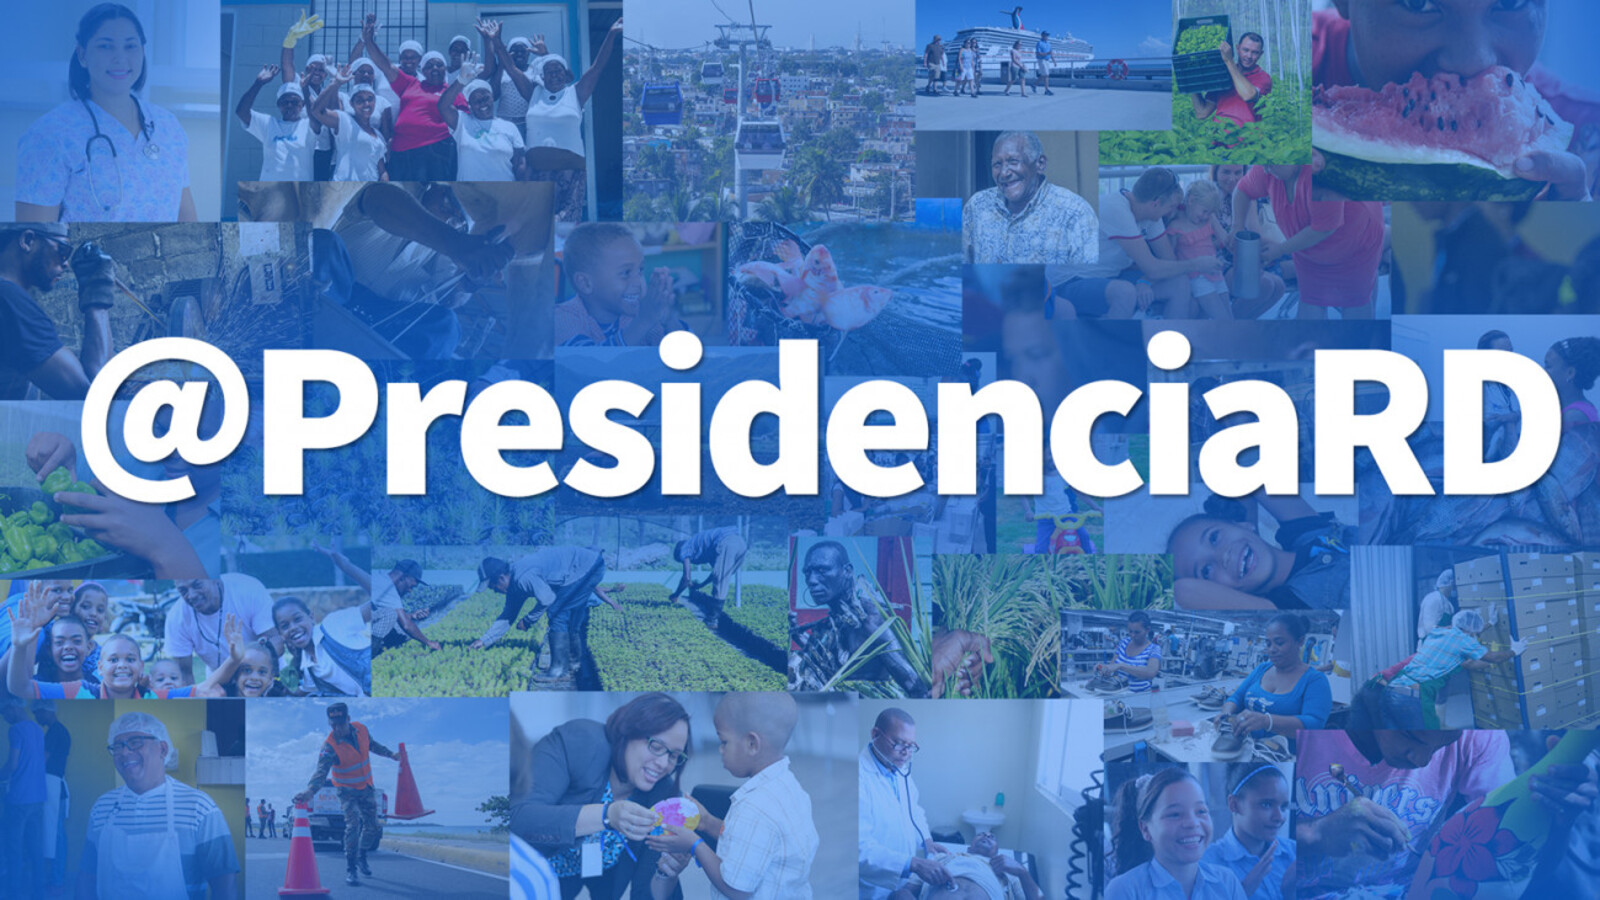 REPÚBLICA DOMINICANA: Cuenta de Facebook de Presidencia RD, la cuarta más activa del mundo, evidencia cotidiana y permanente rendición de cuentas